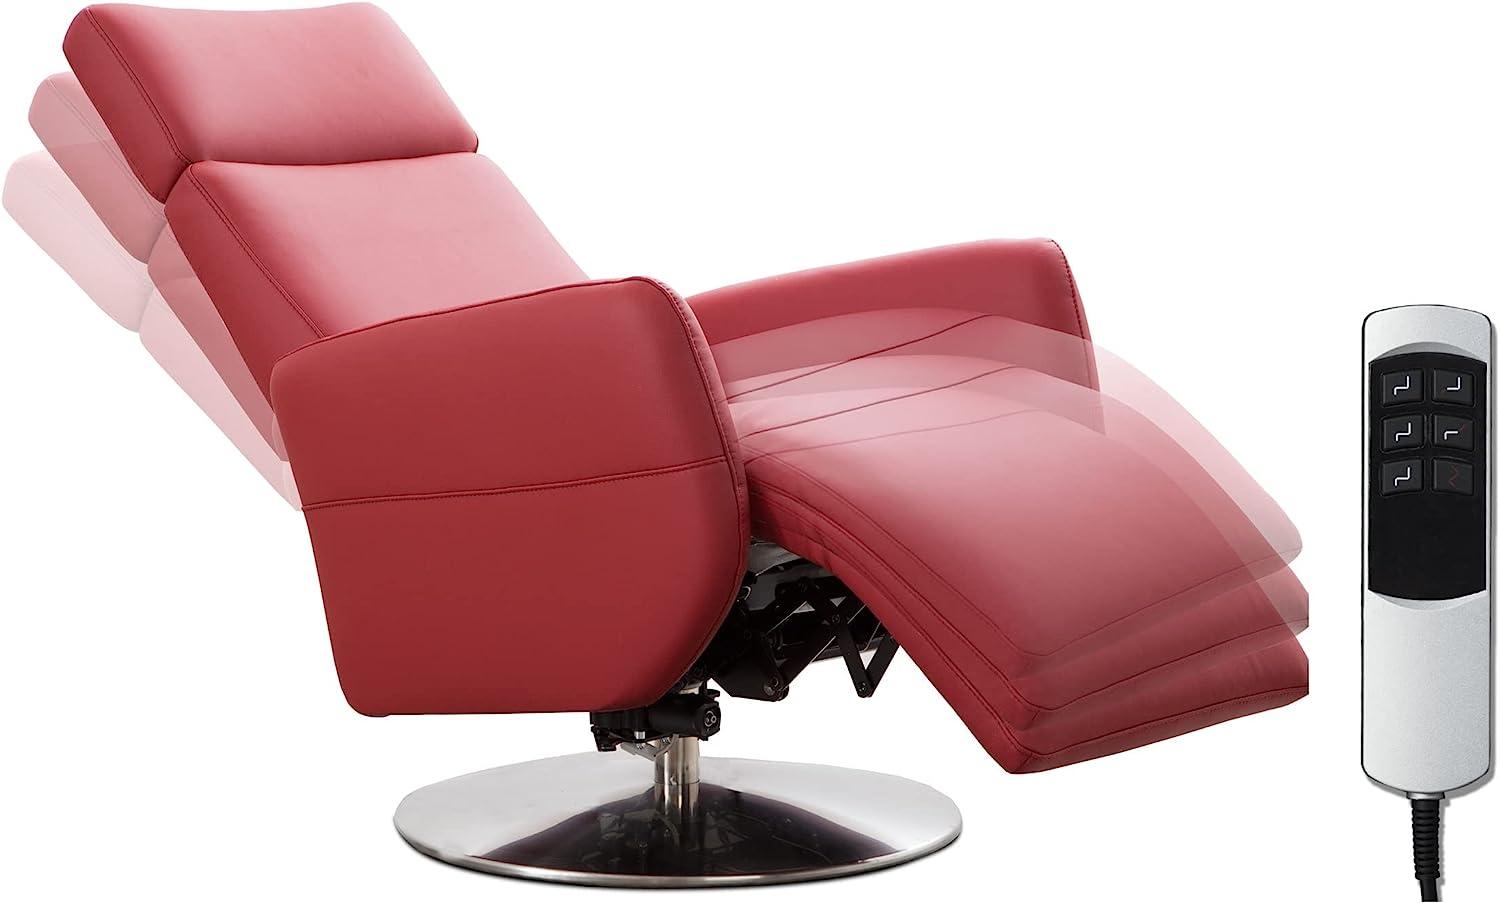 Cavadore TV-Sessel Cobra mit 2 E-Motoren / Elektrischer Fernsehsessel mit Fernbedienung / Relaxfunktion, Liegefunktion / Ergonomie M / Belastbar bis 130 kg / 71 x 110 x 82 / Echtleder Rot Bild 1